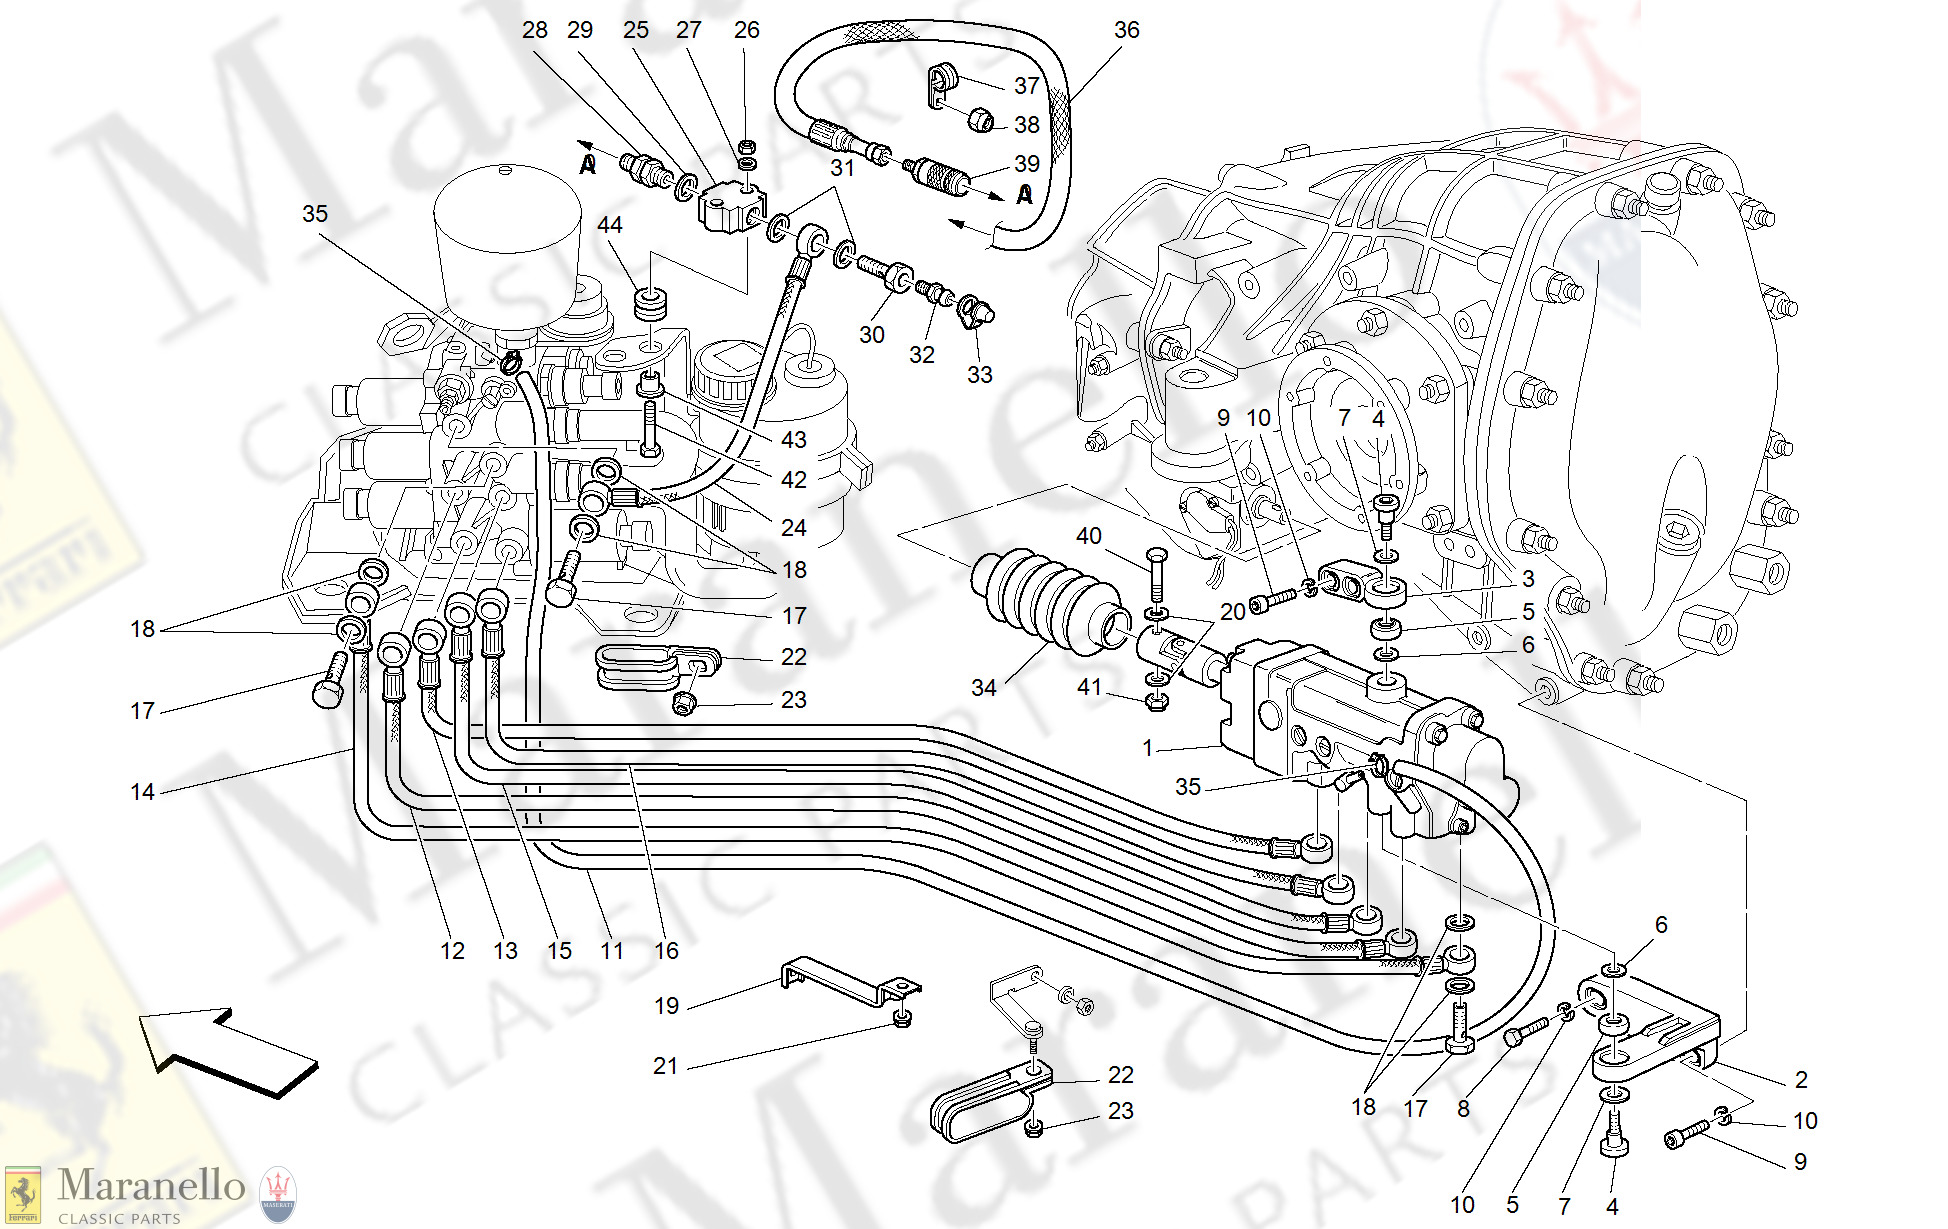 042 - F1 Clutch Hydraulic Control -Valid For F1-